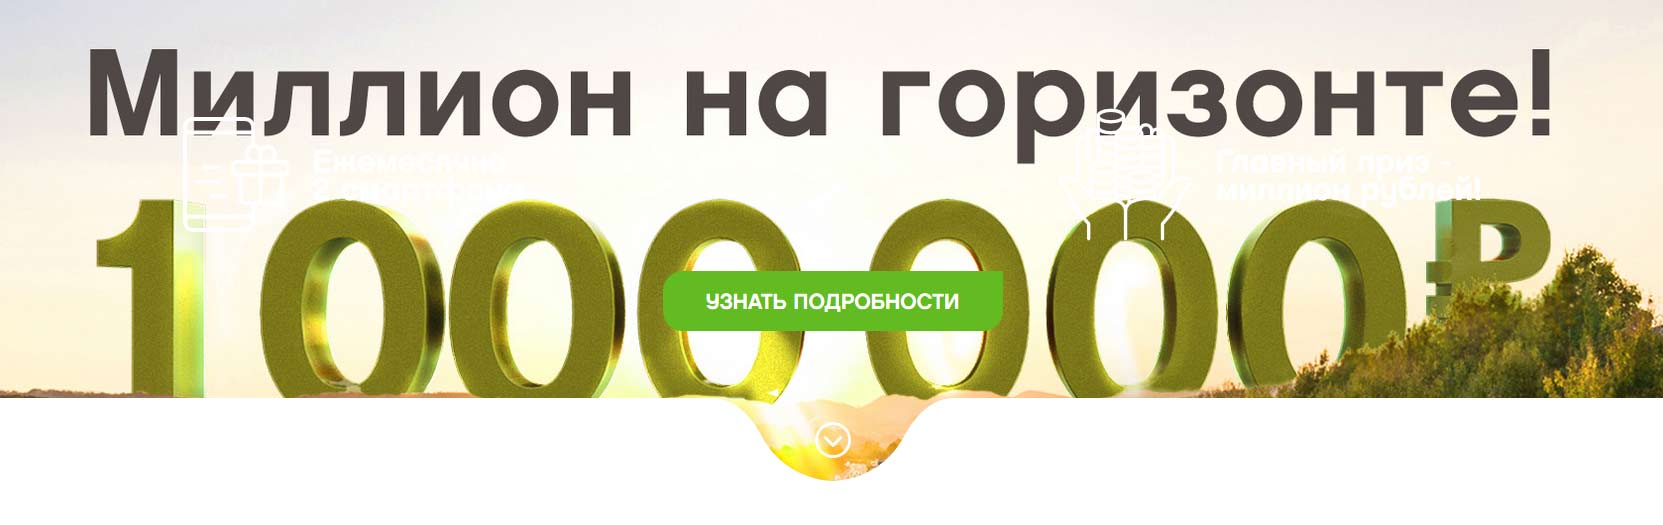 azspromo.ru как зарегистрироваться